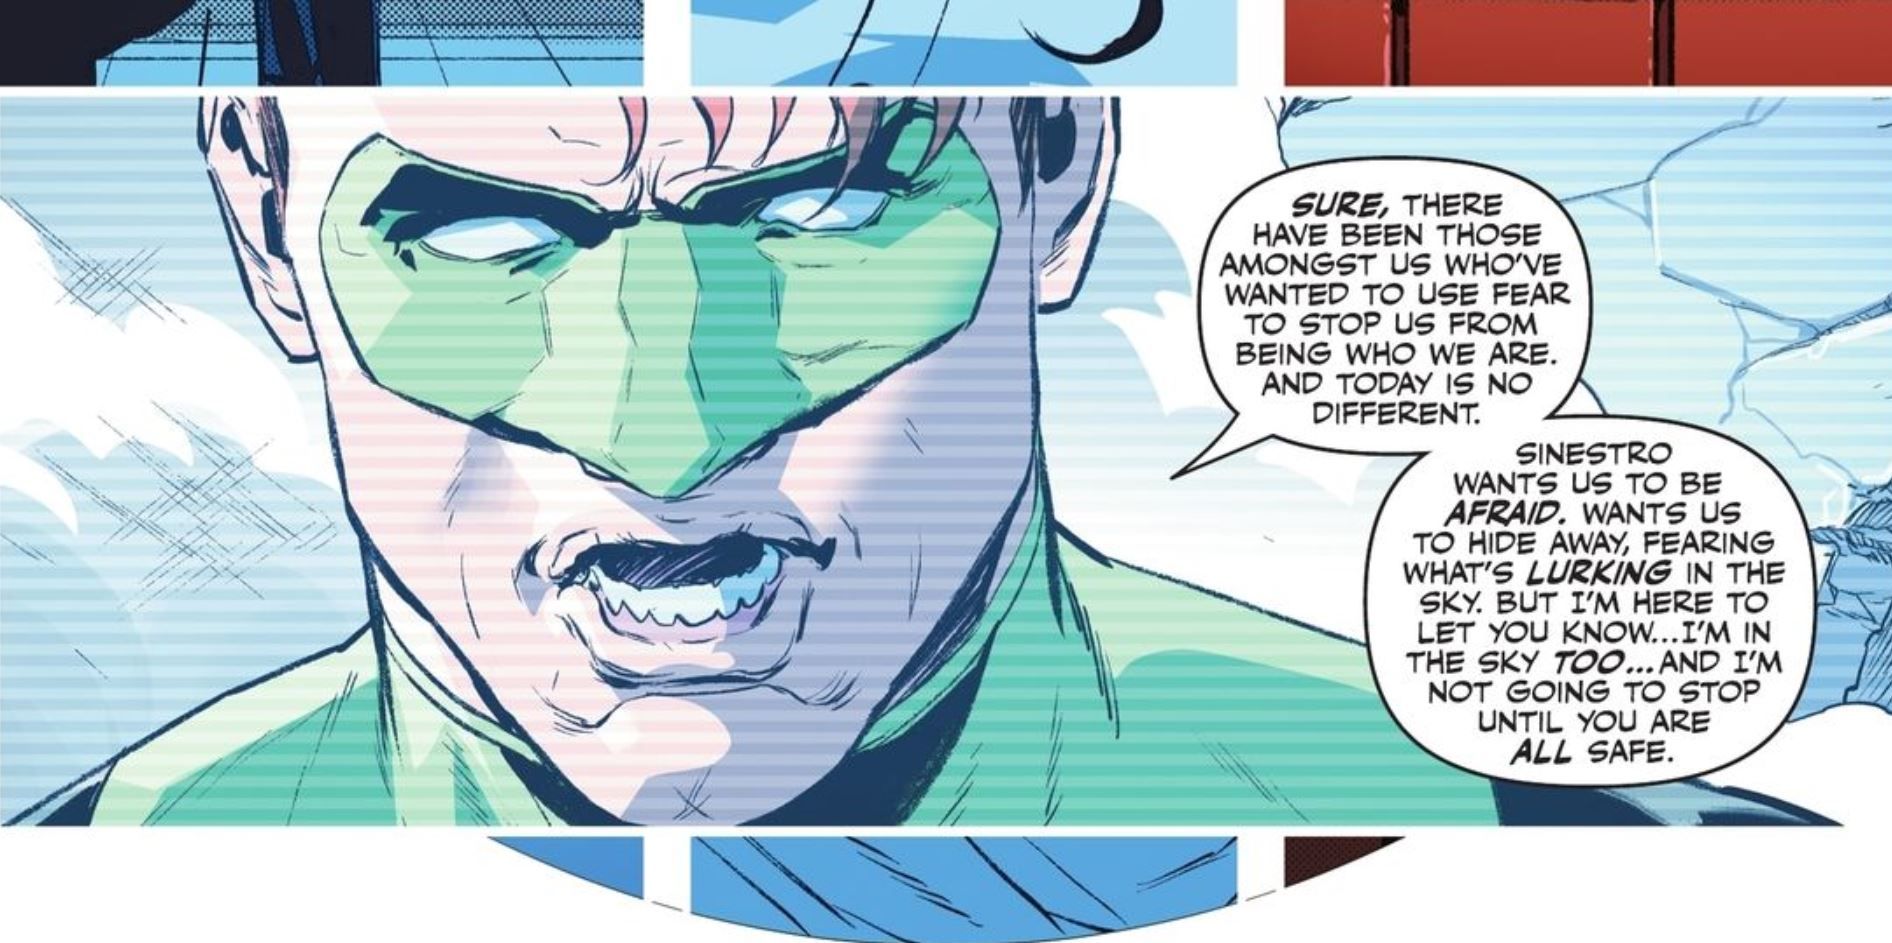 Green Lantern Warns against Sinestro DC